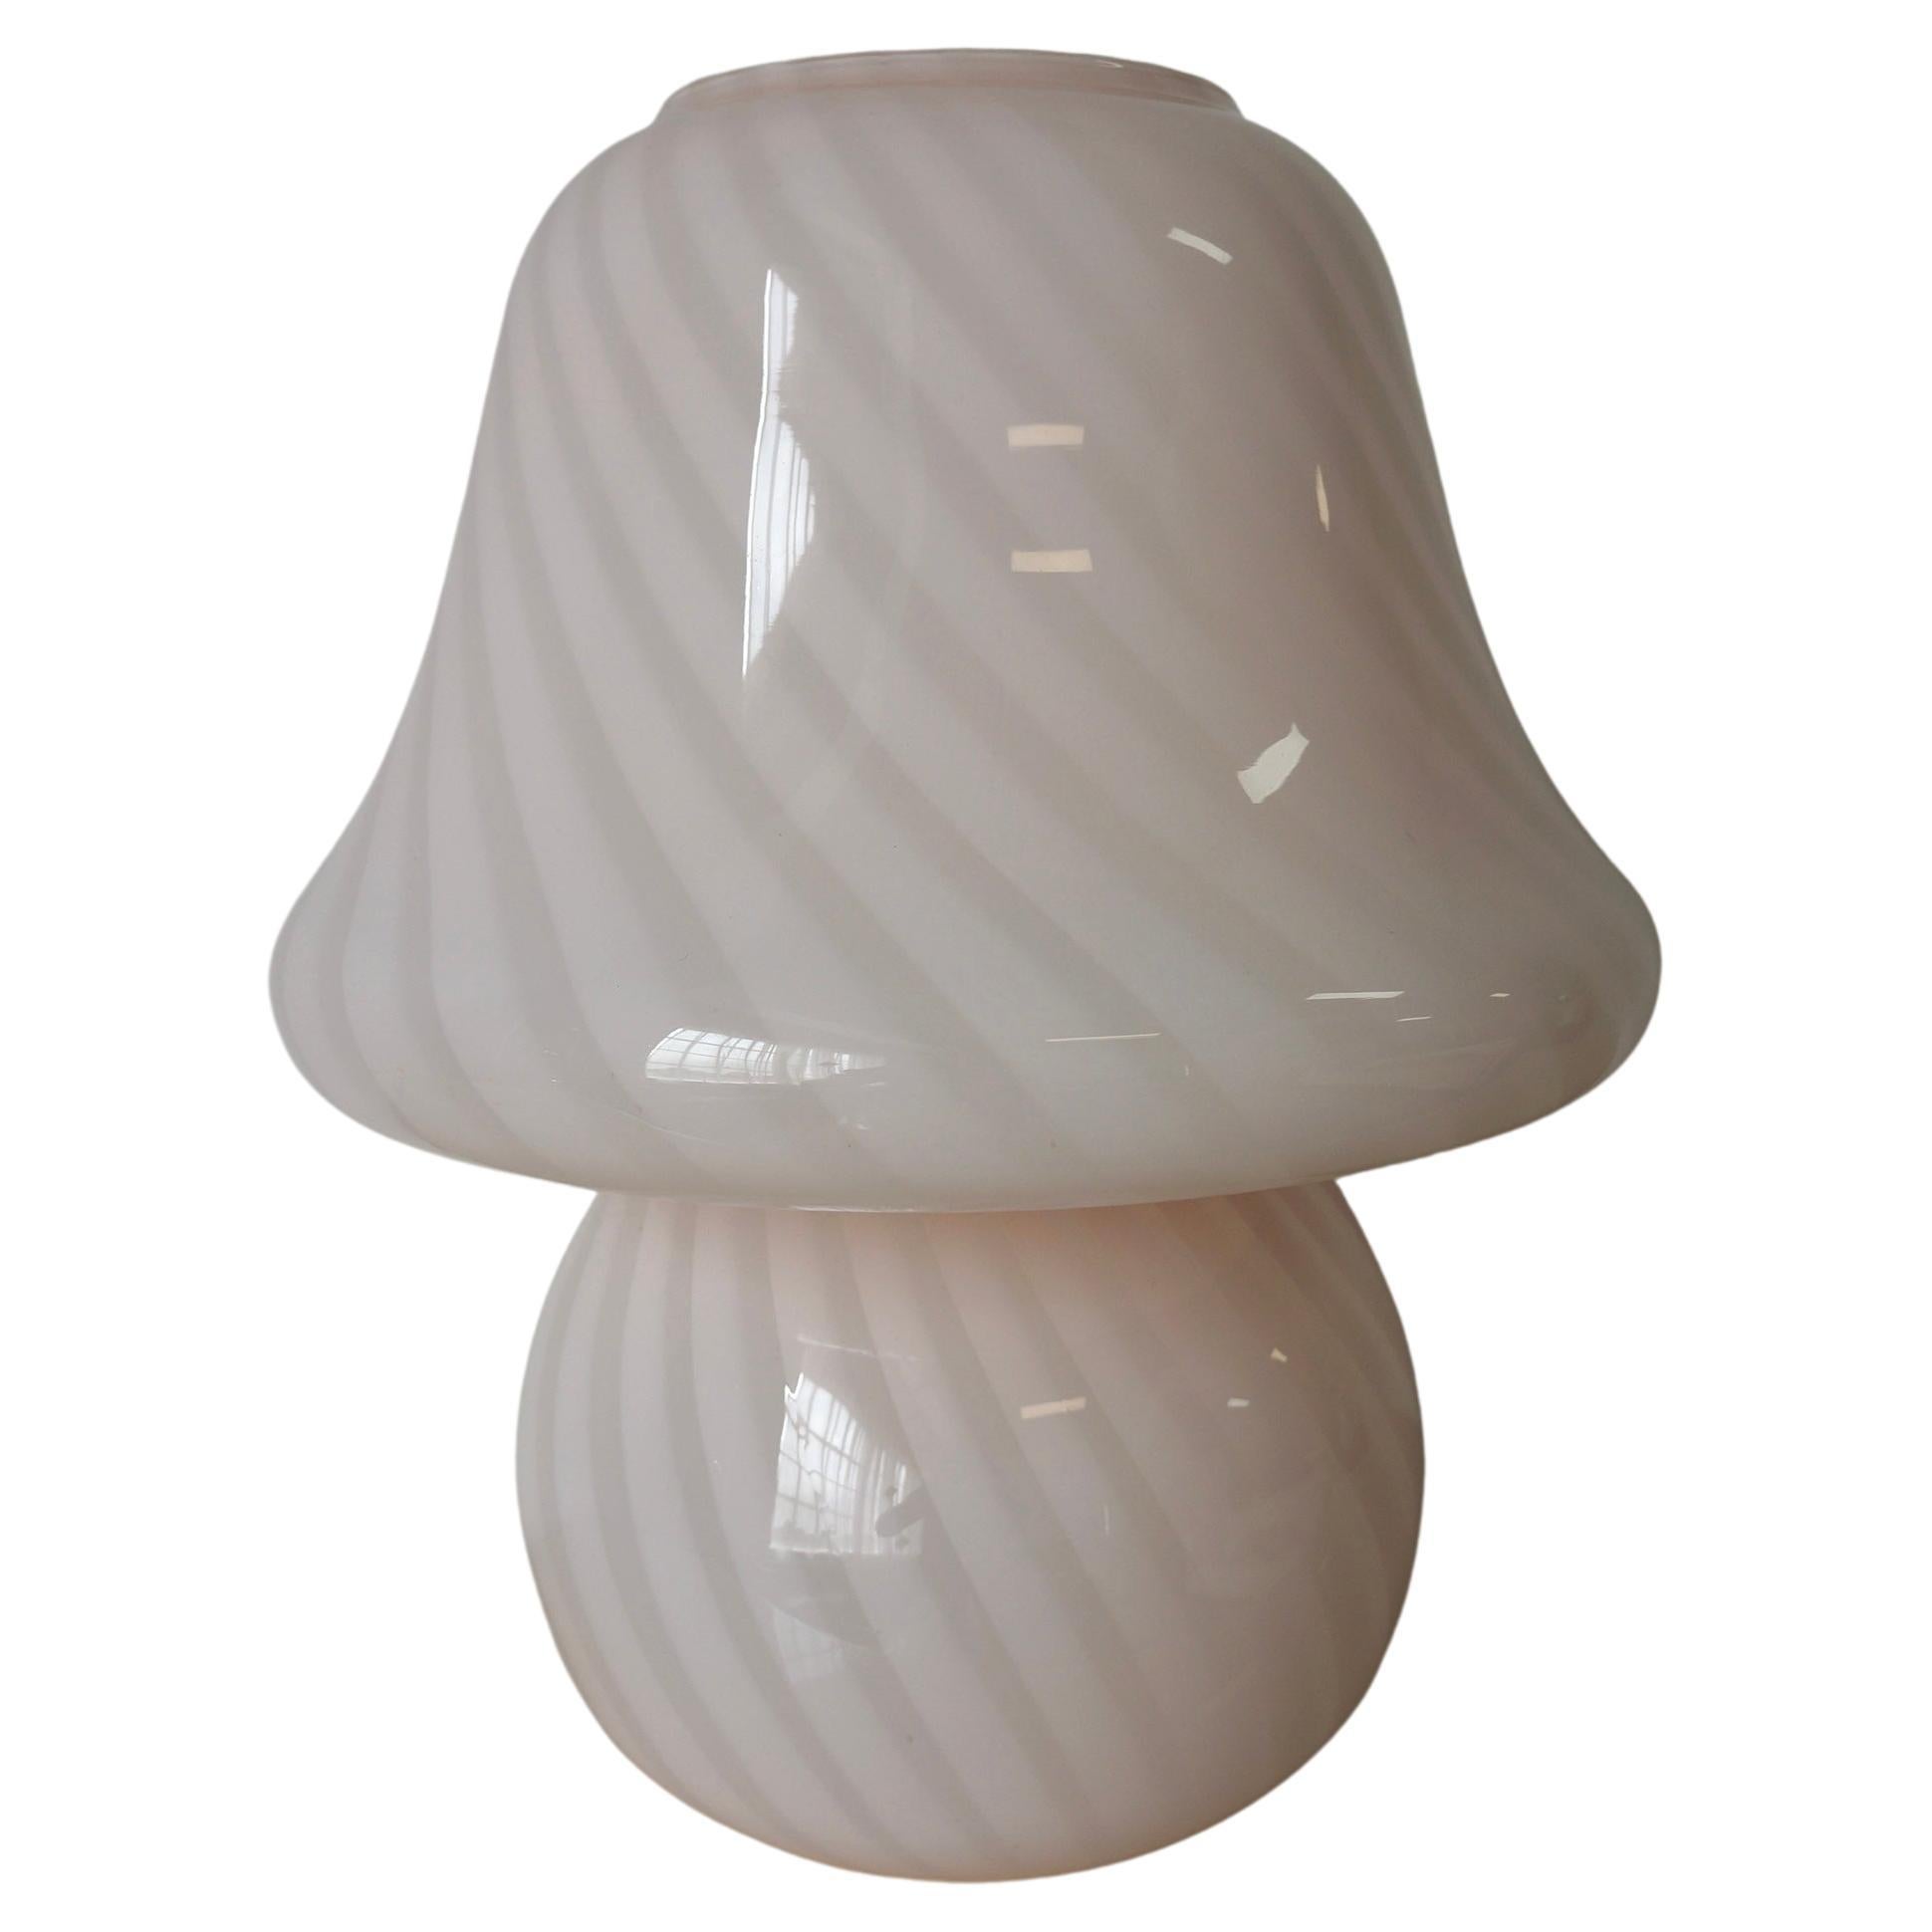 Impresionante lámpara de cristal artístico de Murano en forma de seta con la parte superior acampanada. Fue fabricado originalmente en la isla de Murano (Italia) en la década de 1970 por artesanos del cristal de Murano. Esta forma y tamaño de hongo